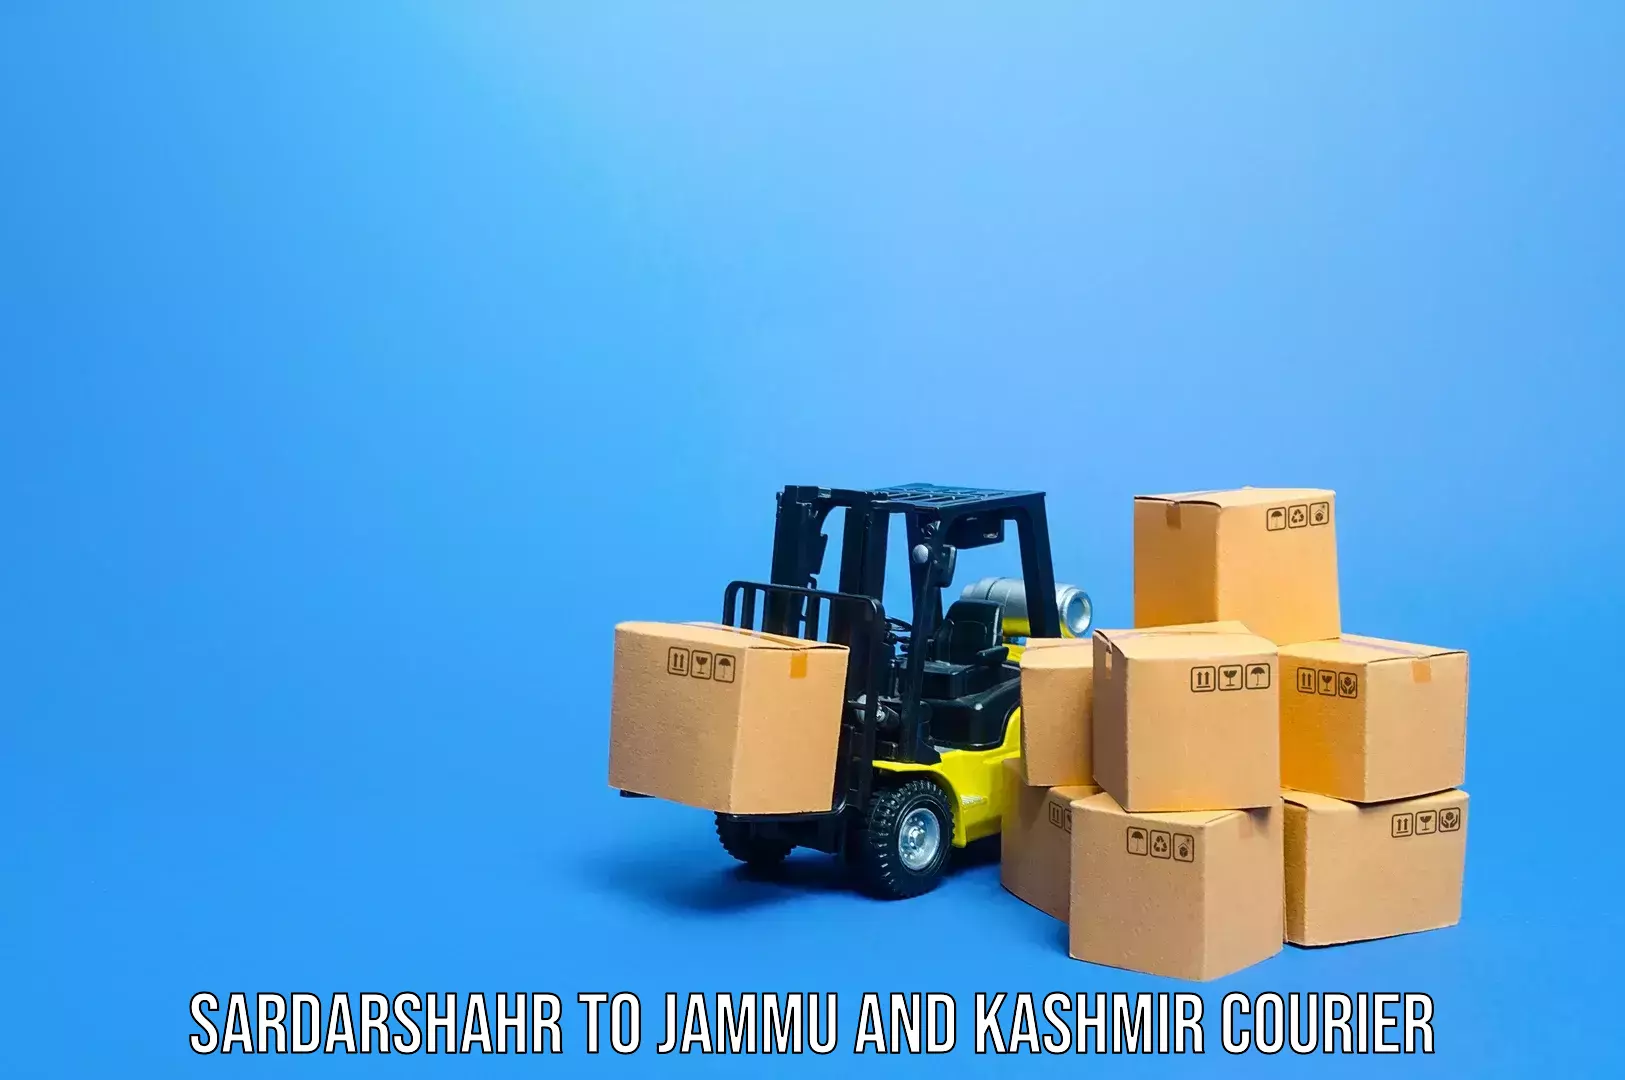 Citywide baggage courier Sardarshahr to Srinagar Kashmir